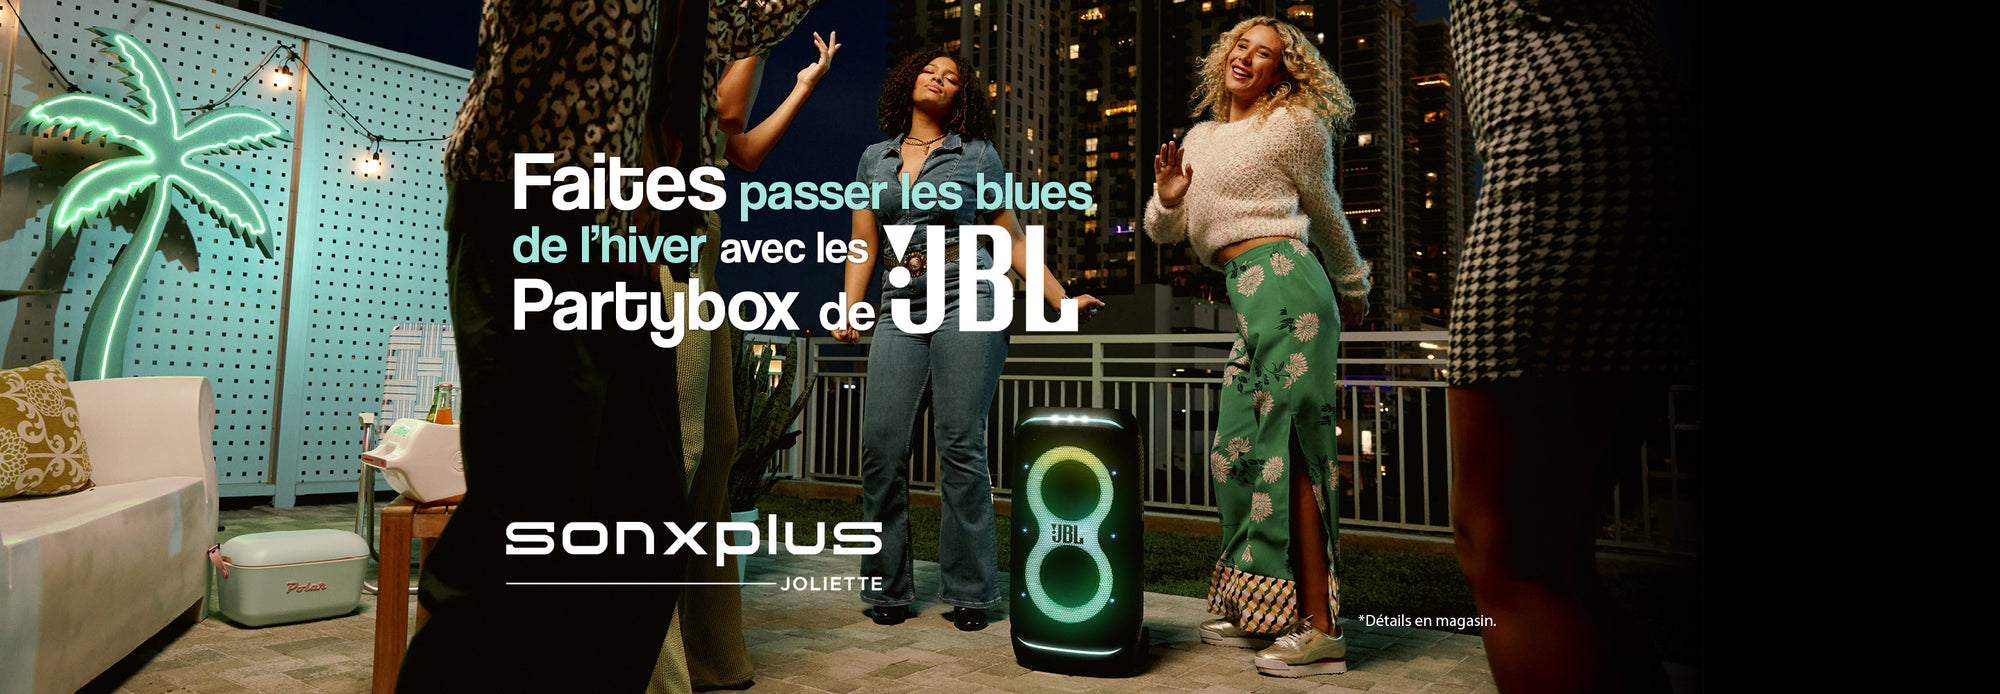 JBL Partybox | SONXPLUS Joliette